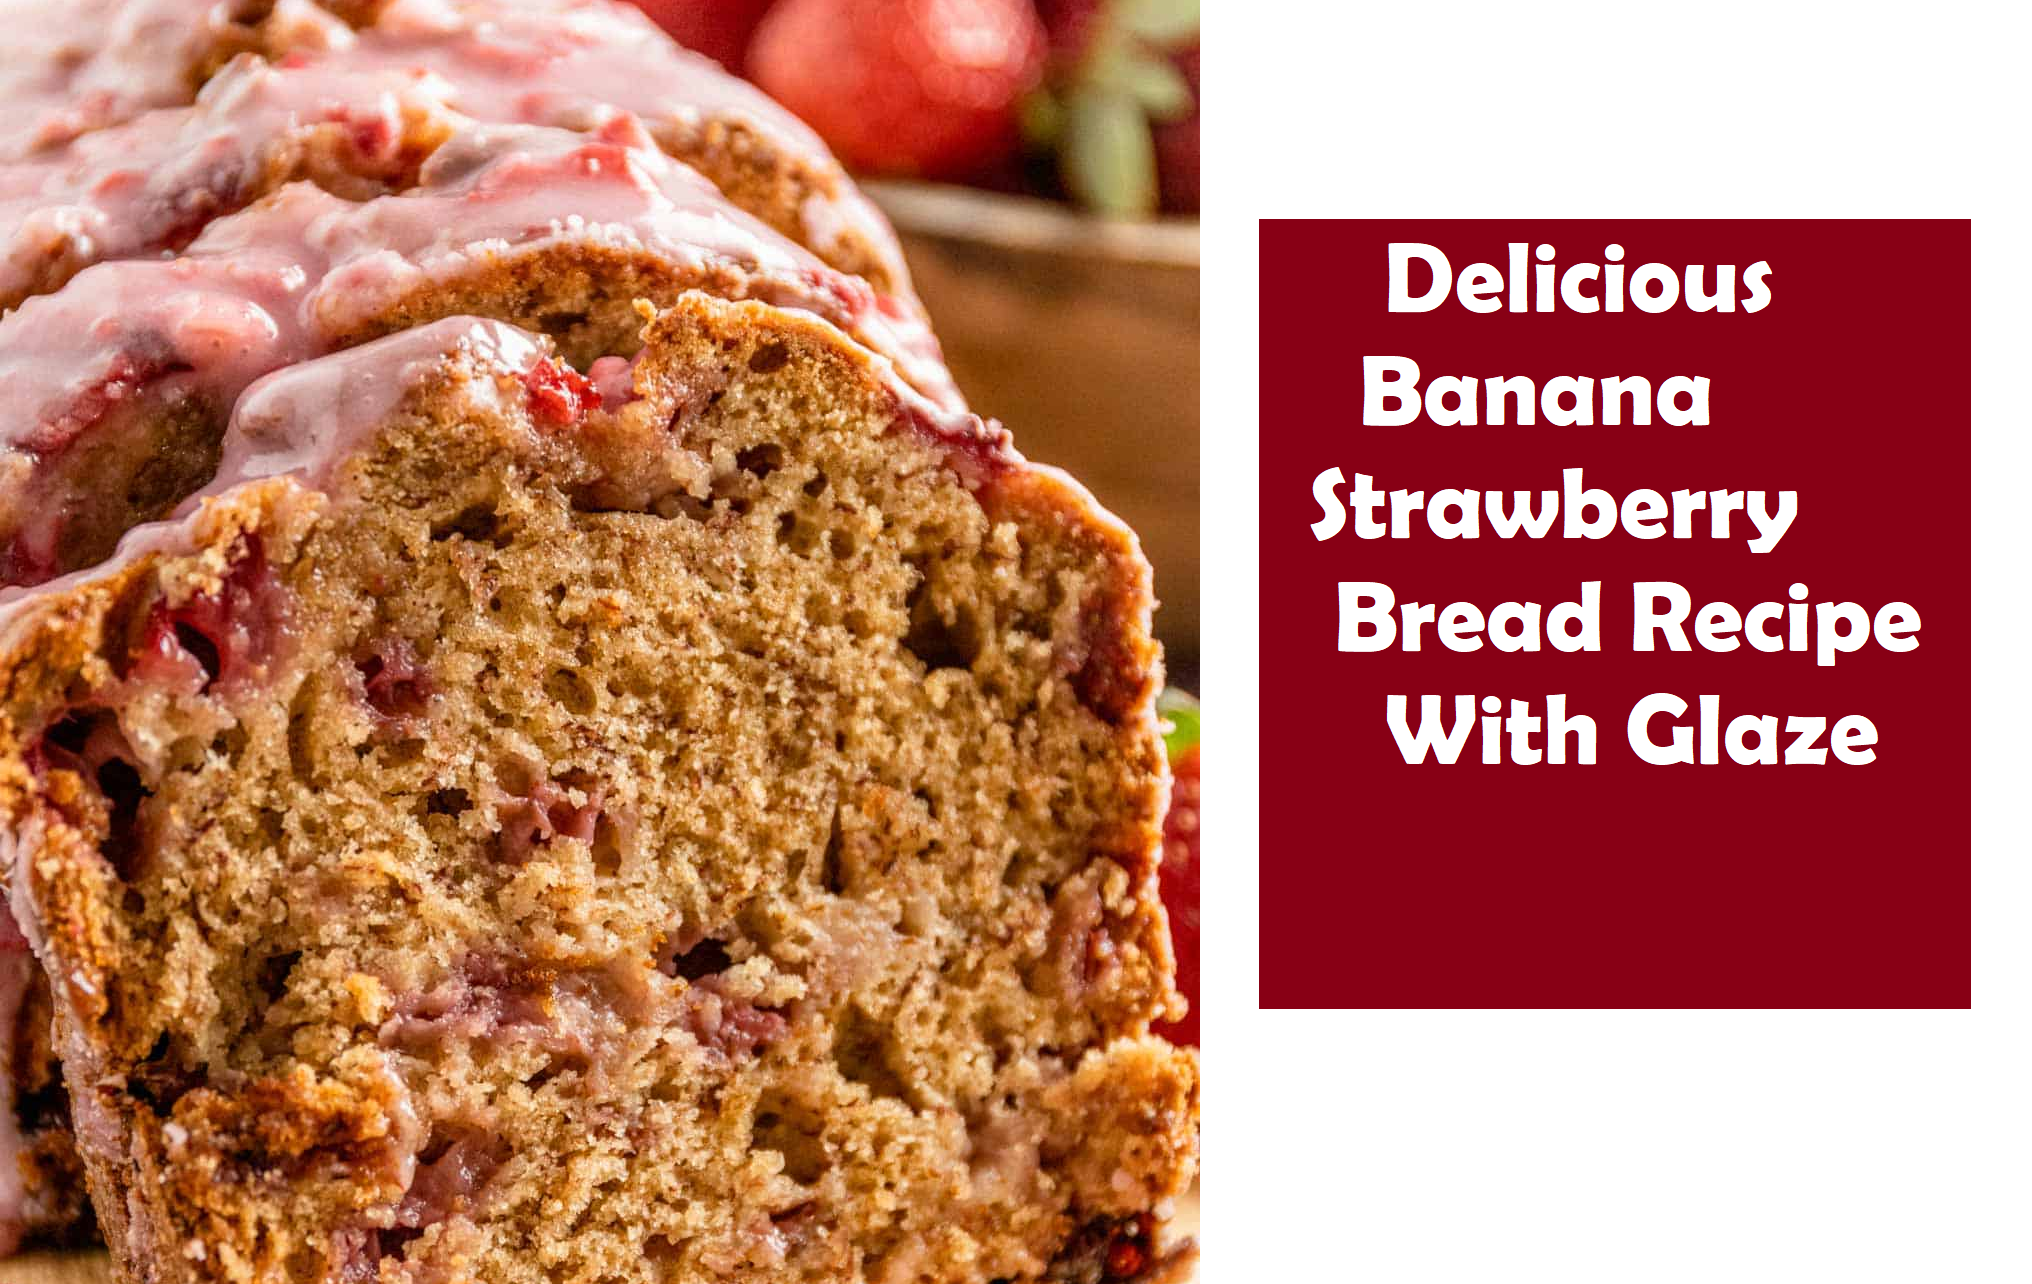 # Delicious Banana Strawberry Bread Recipe With Glaze